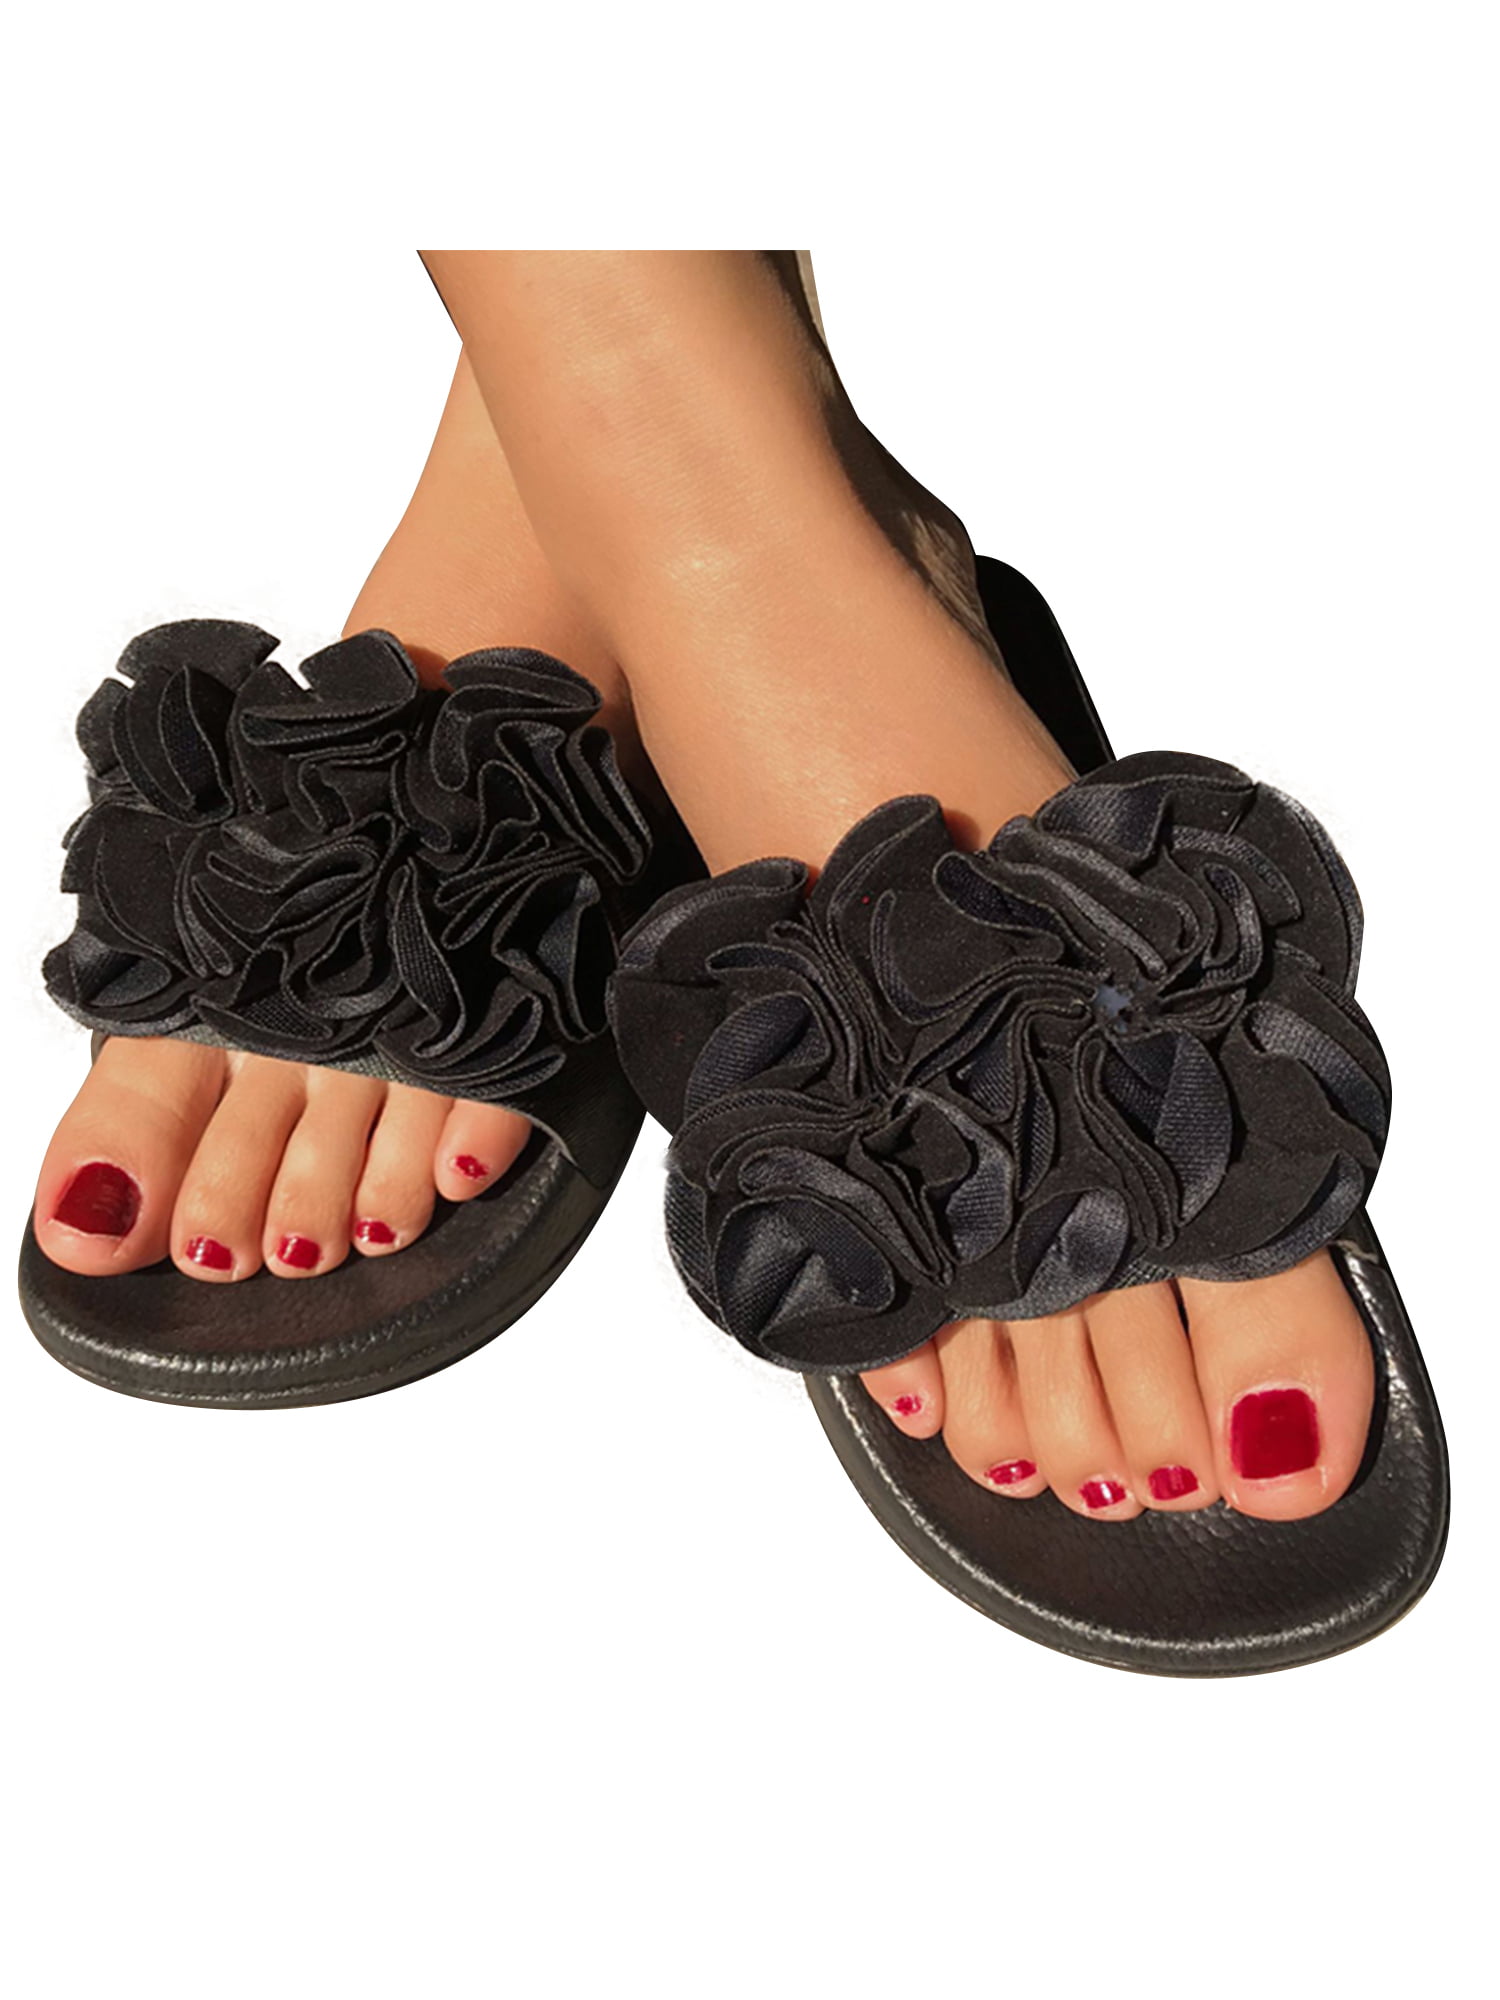 Summer Women Comfy Platform Plain Sandal Slippers Retro Flip Flop Mules Shoes US 